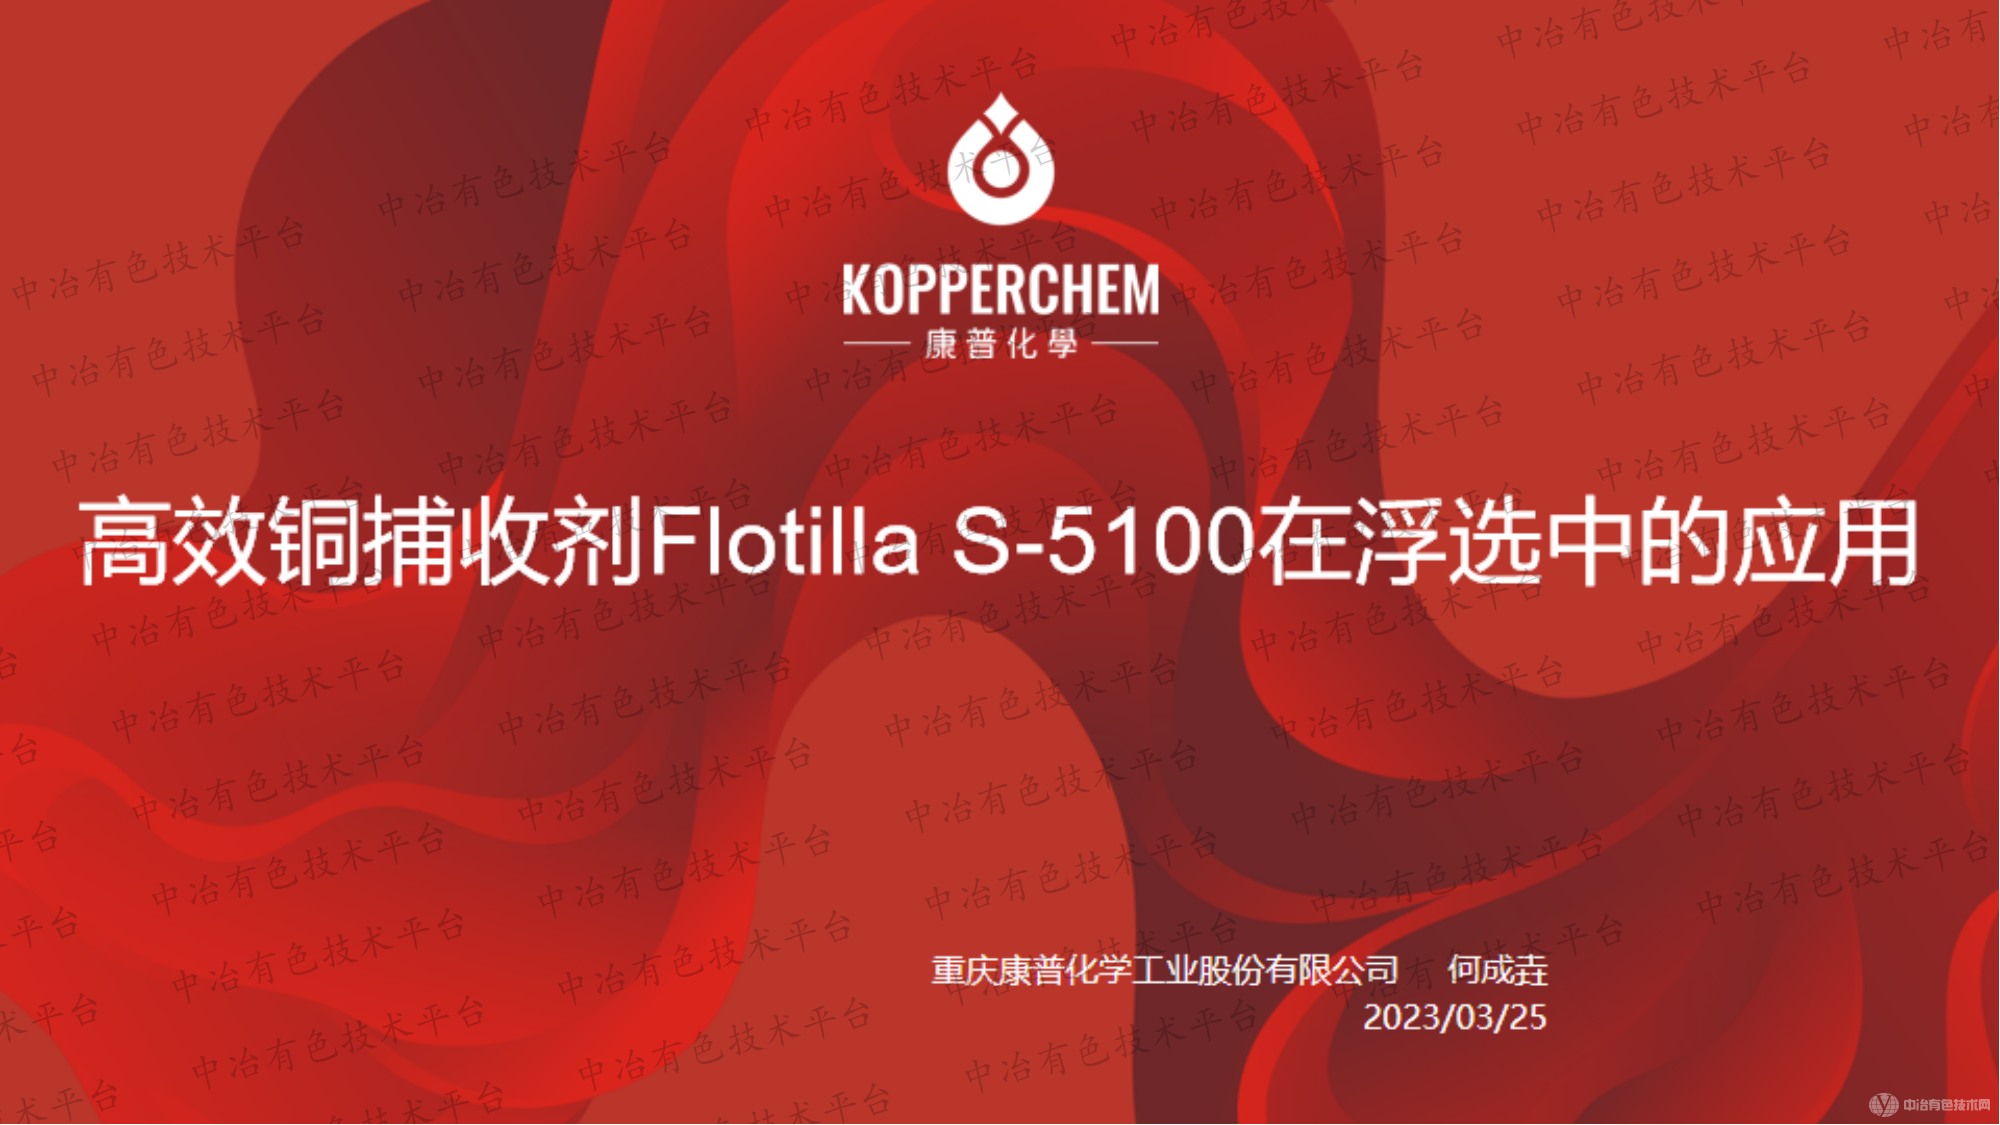 高效铜捕收剂Flotilla S-5100在浮选中的应用